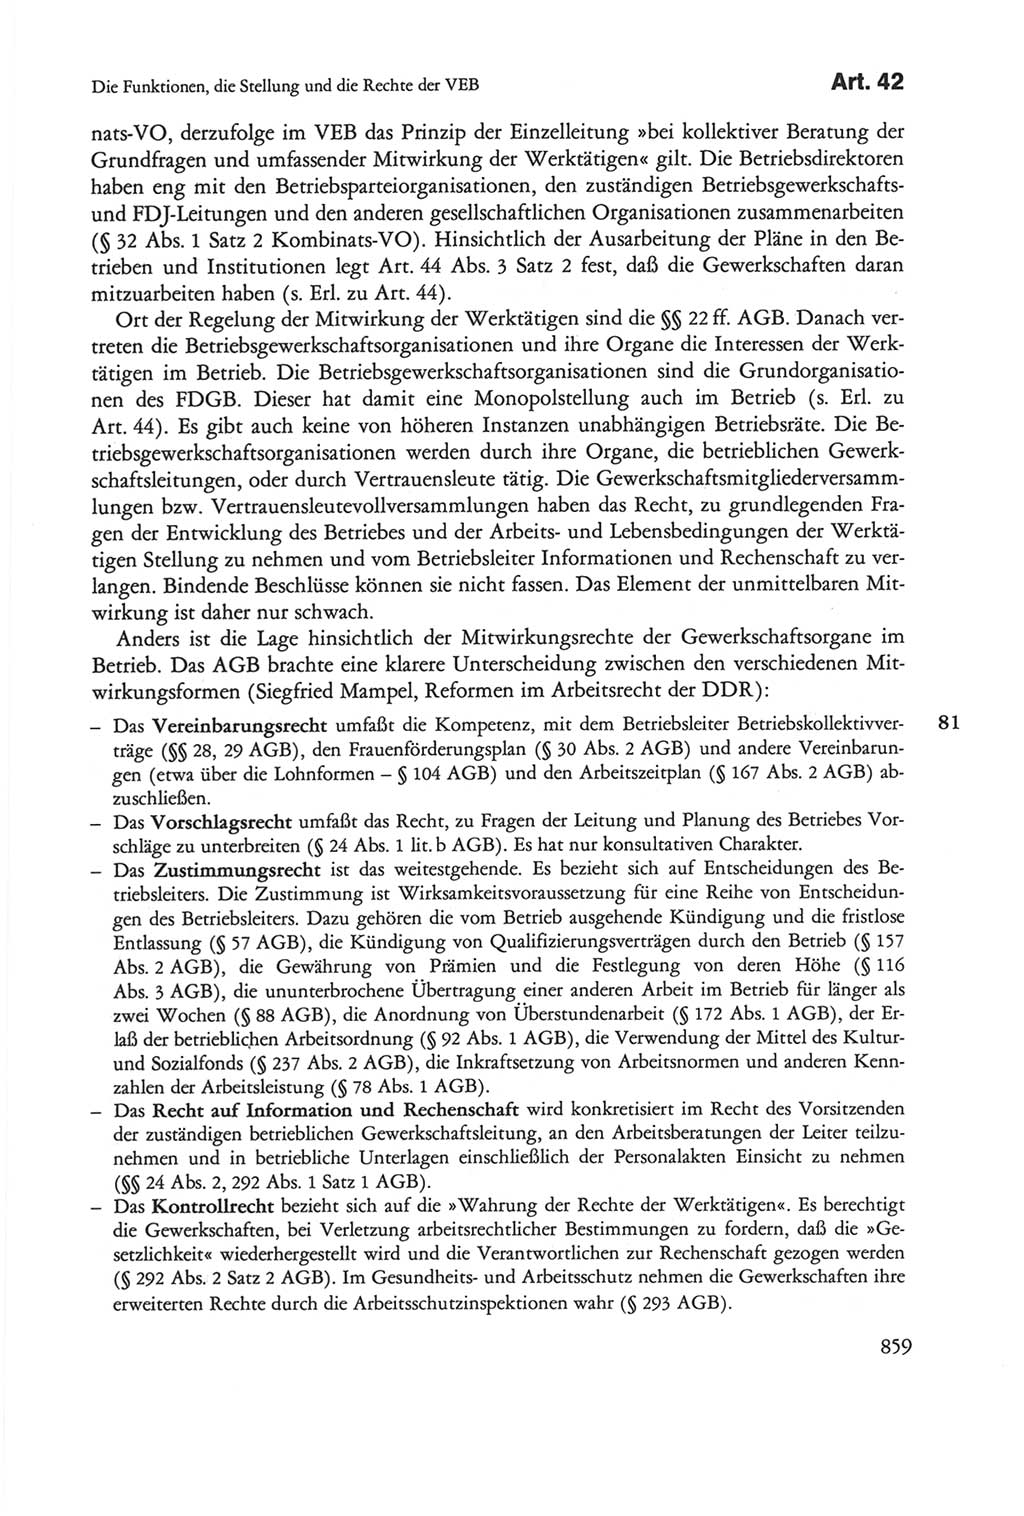 Die sozialistische Verfassung der Deutschen Demokratischen Republik (DDR), Kommentar 1982, Seite 859 (Soz. Verf. DDR Komm. 1982, S. 859)